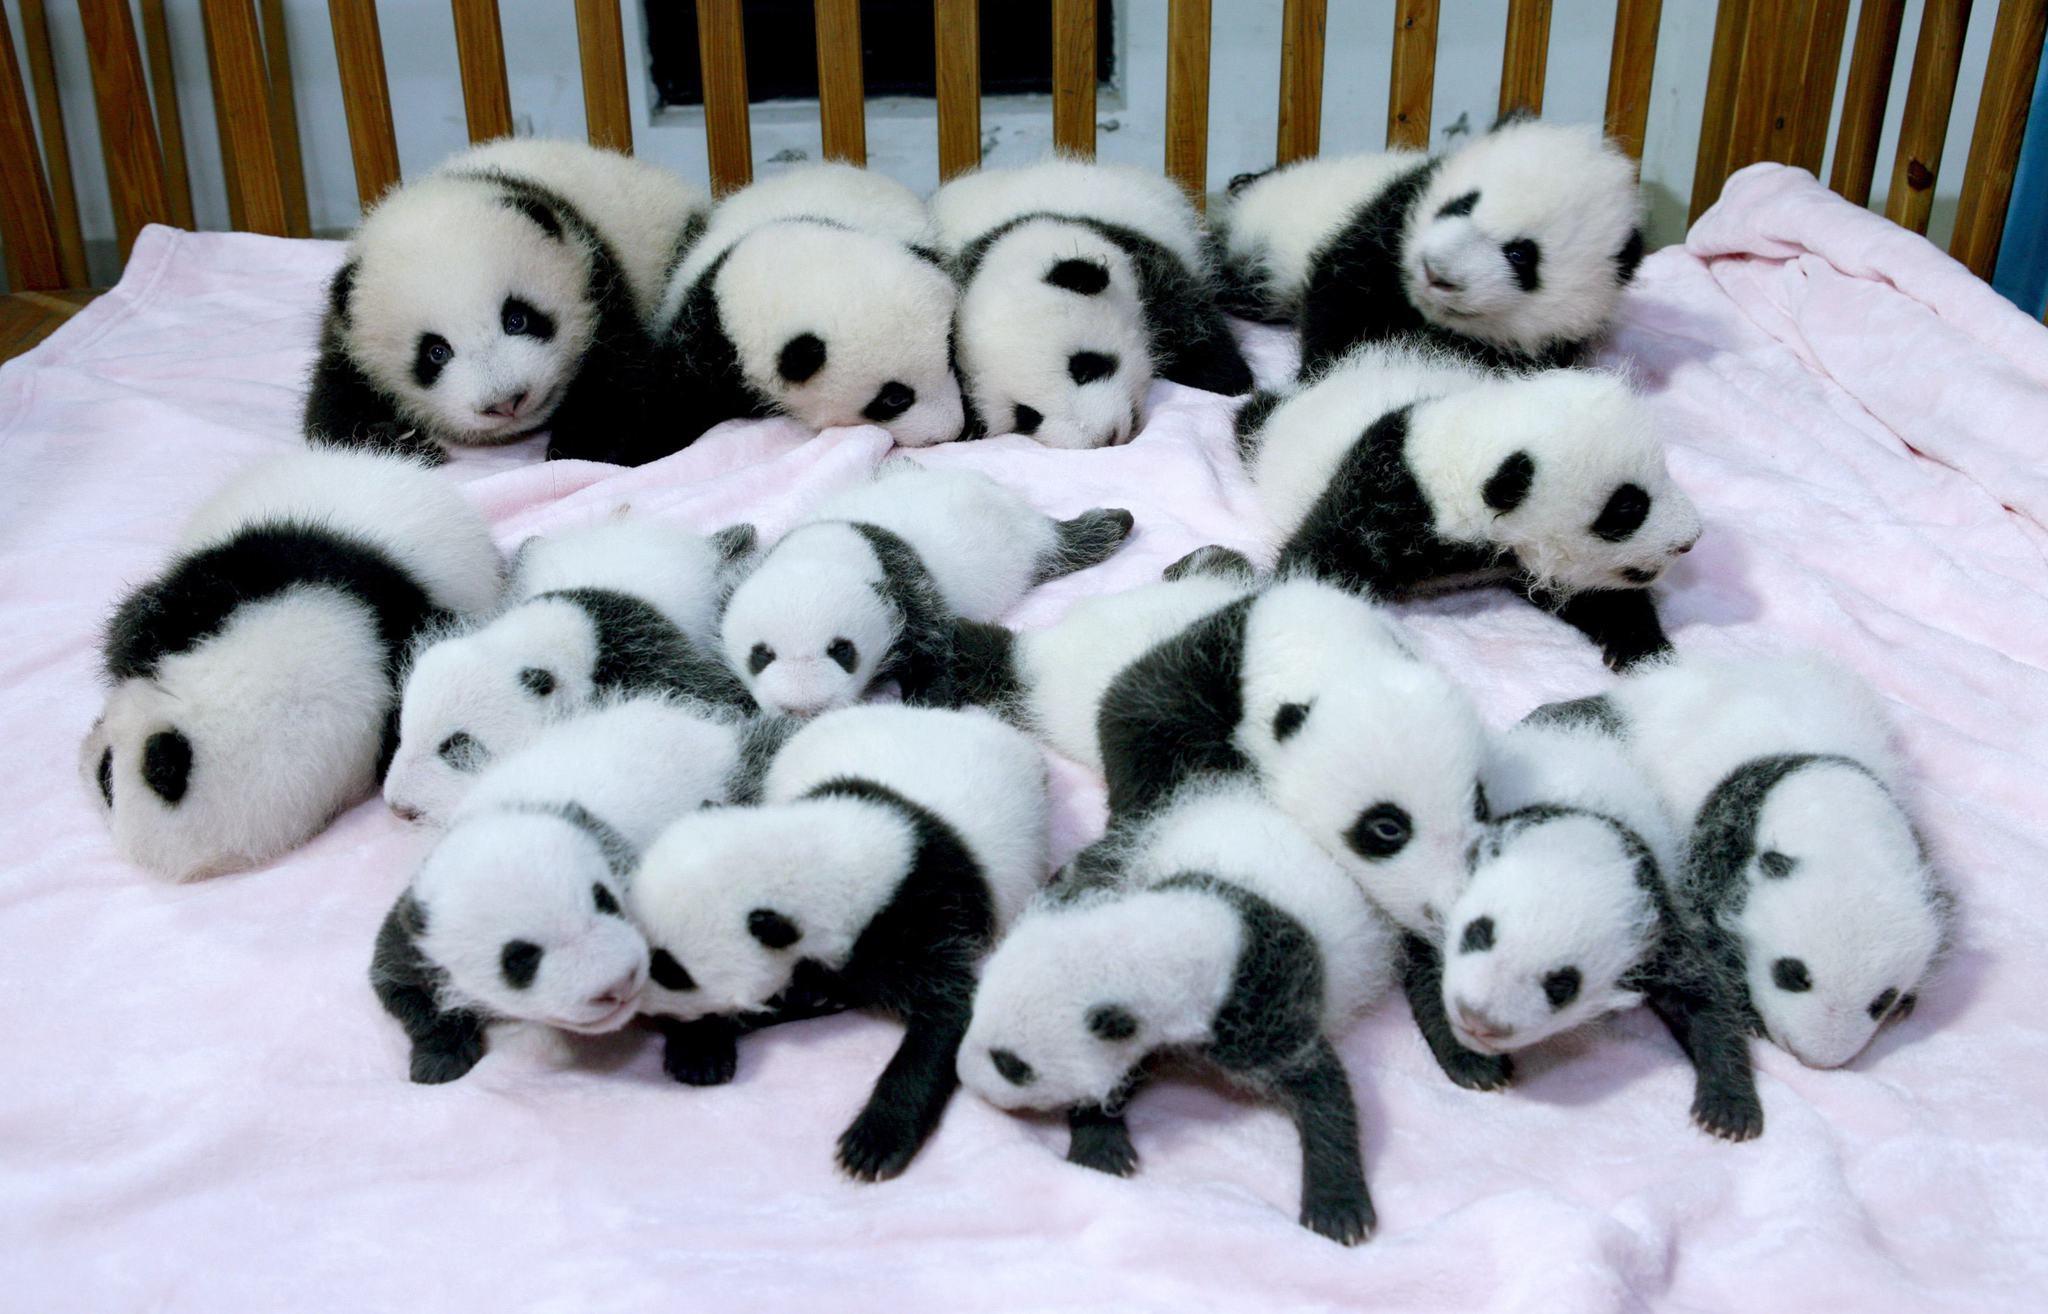 Free Download Cute Panda Wallpapers Tumblr - Cute Baby Pandas - 2048x1314  Wallpaper 